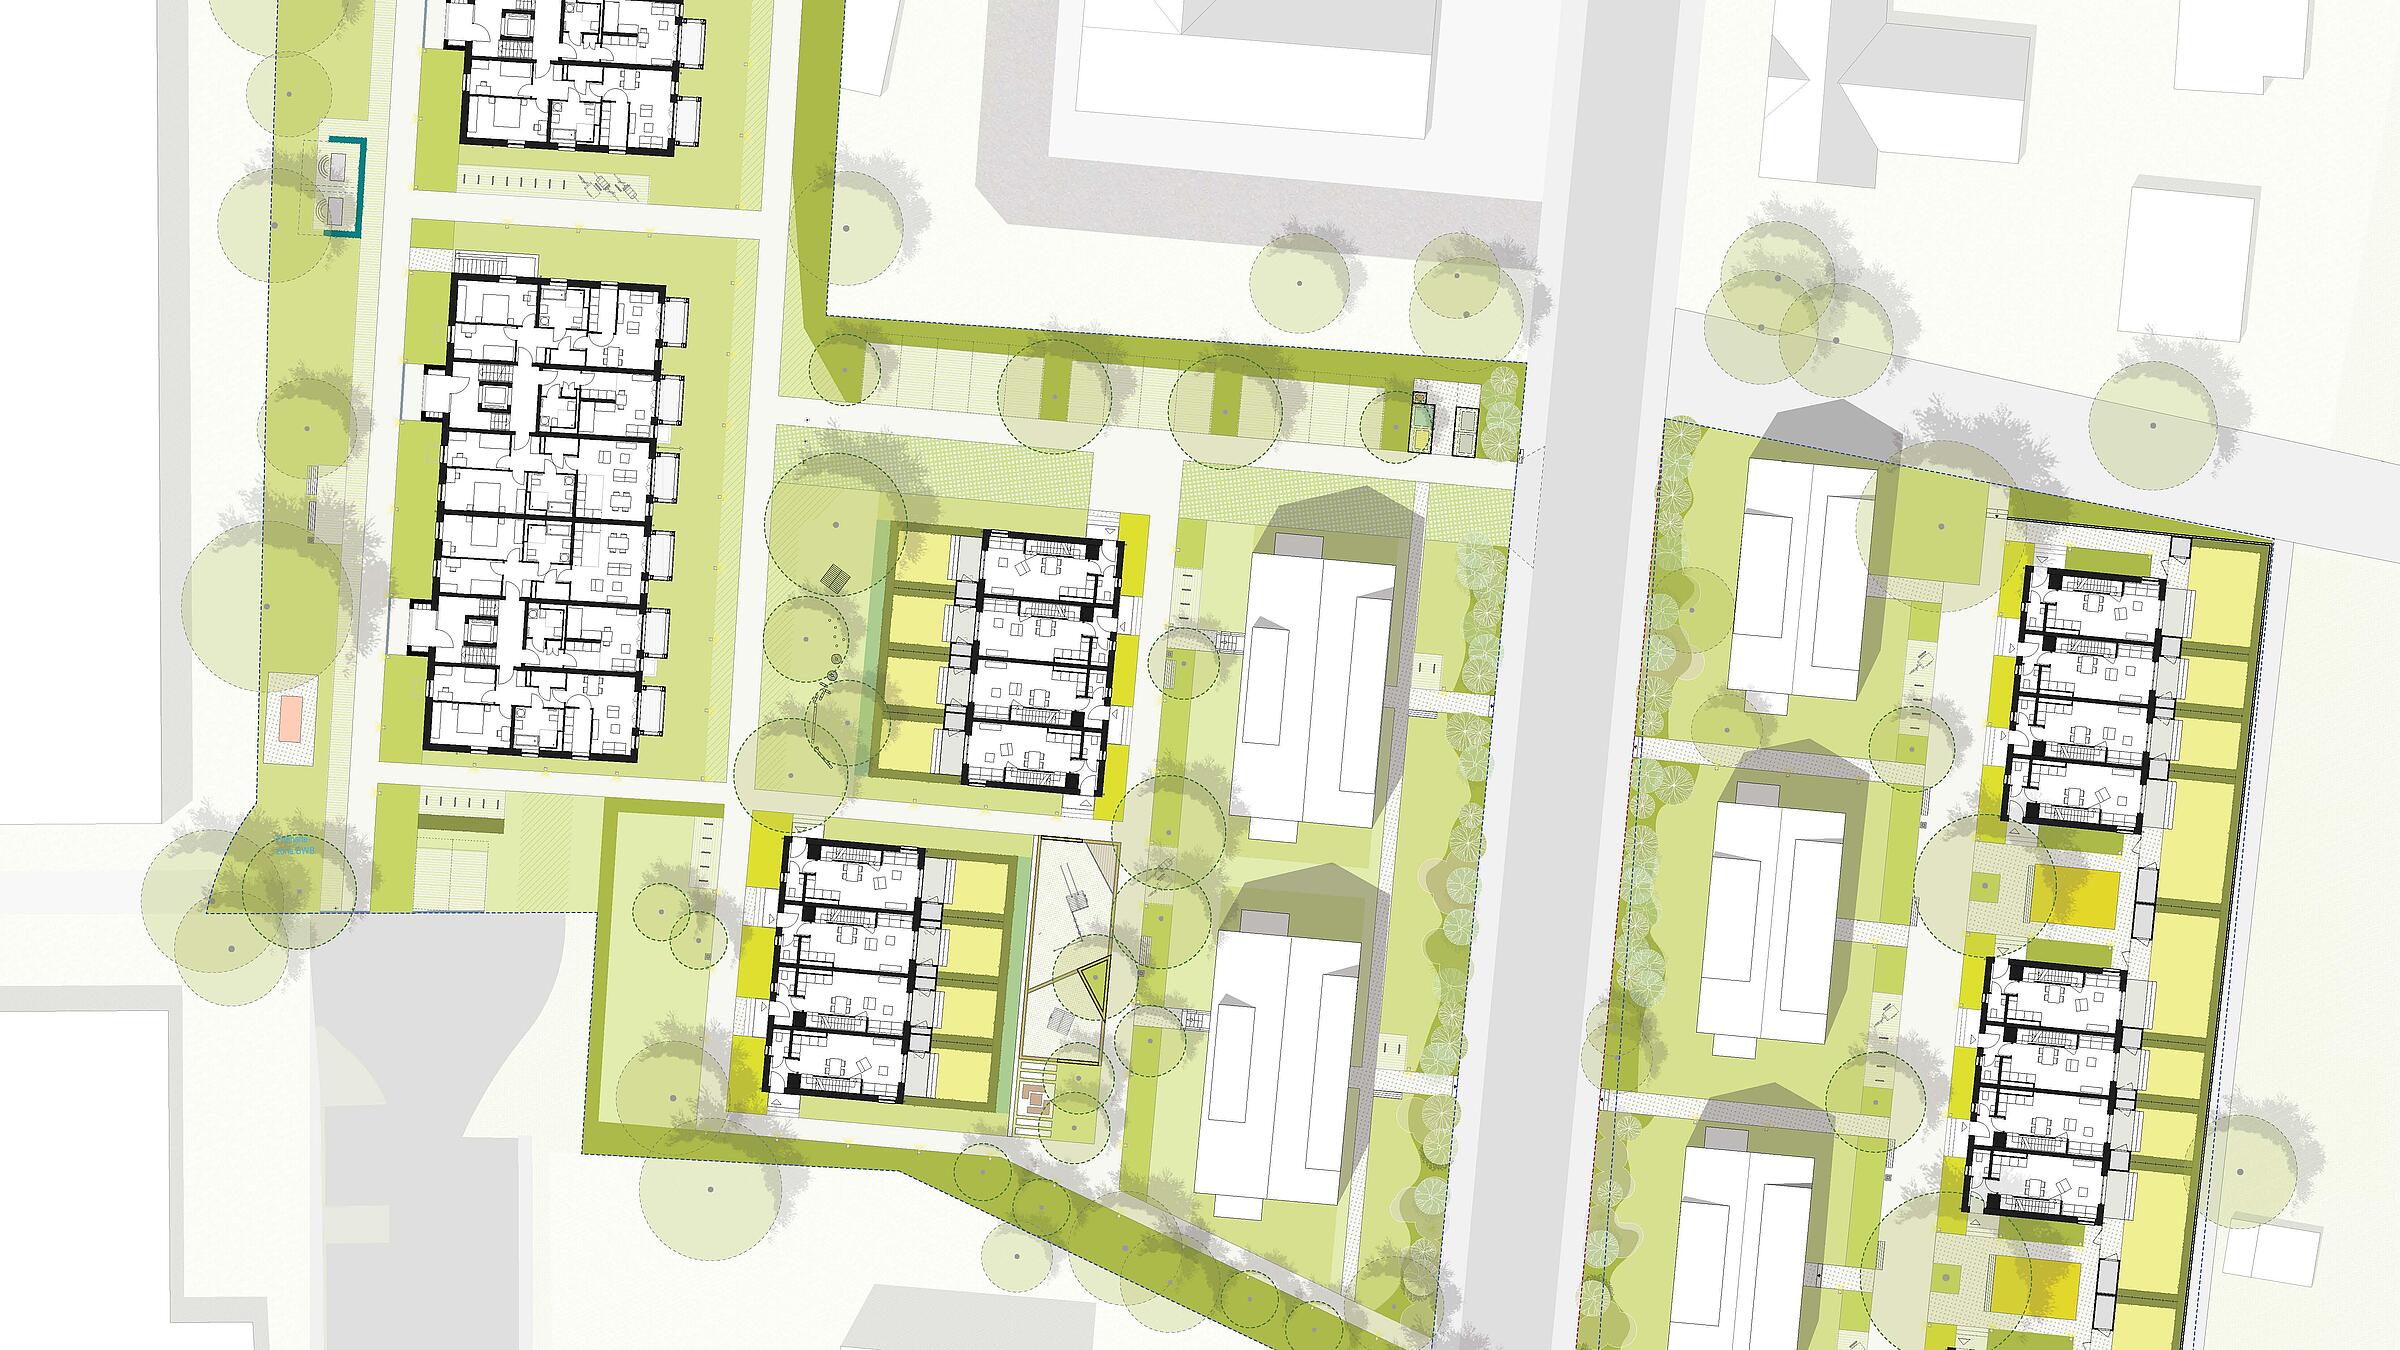 Lageplan der neuen Wohnhäuser entlang der Alten Hellersdorfer Straße